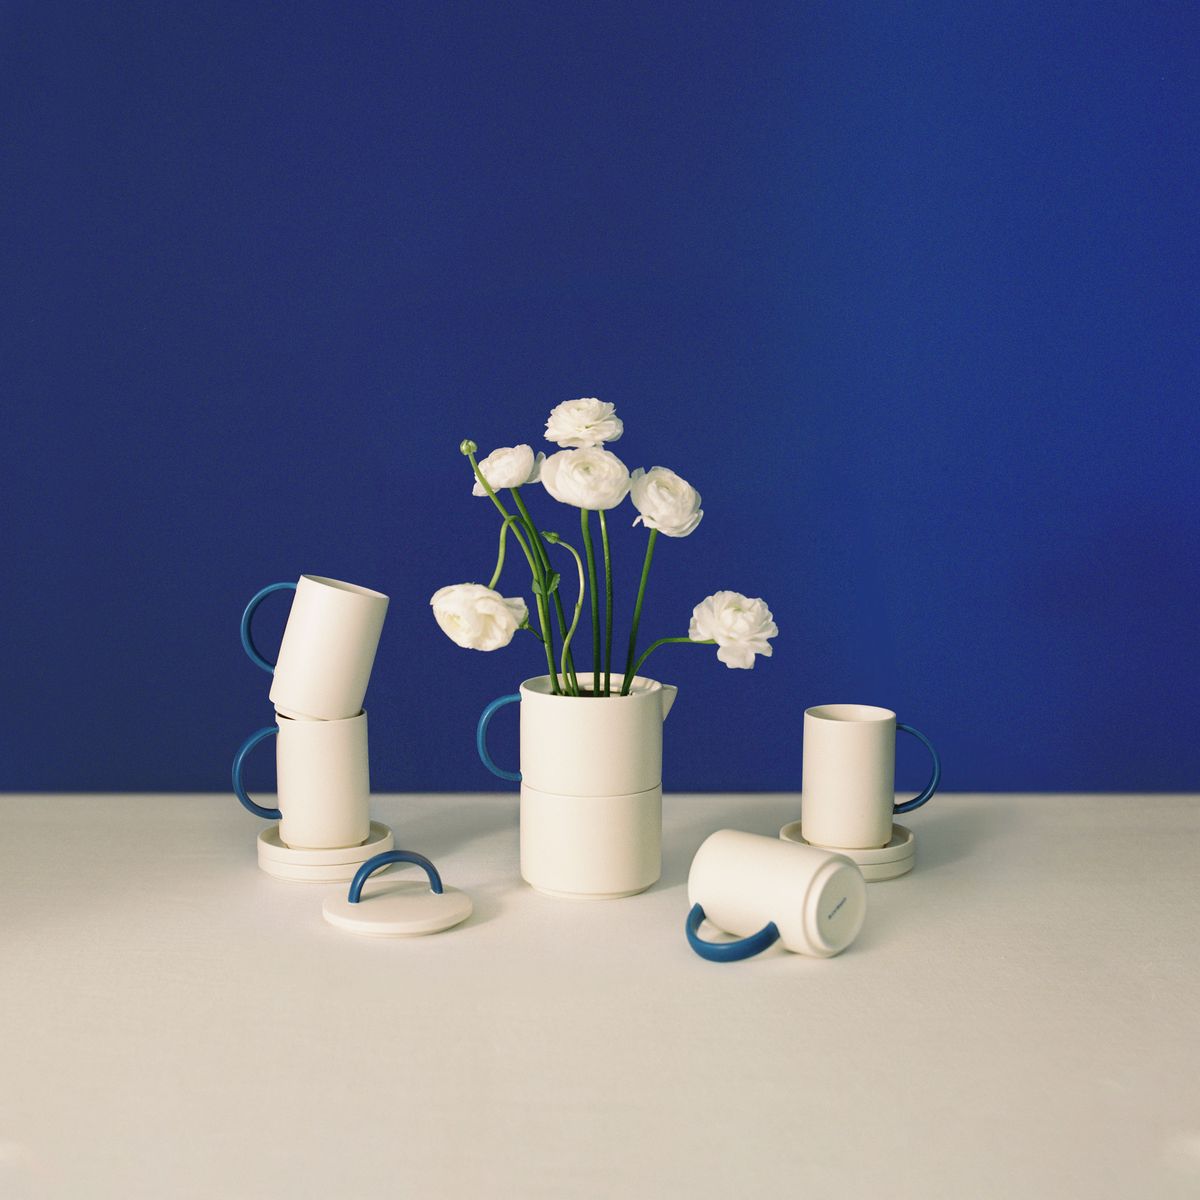 la colección de menaje hecha con cerámica y materiales biodegradables perfecta para tu mesa de verano